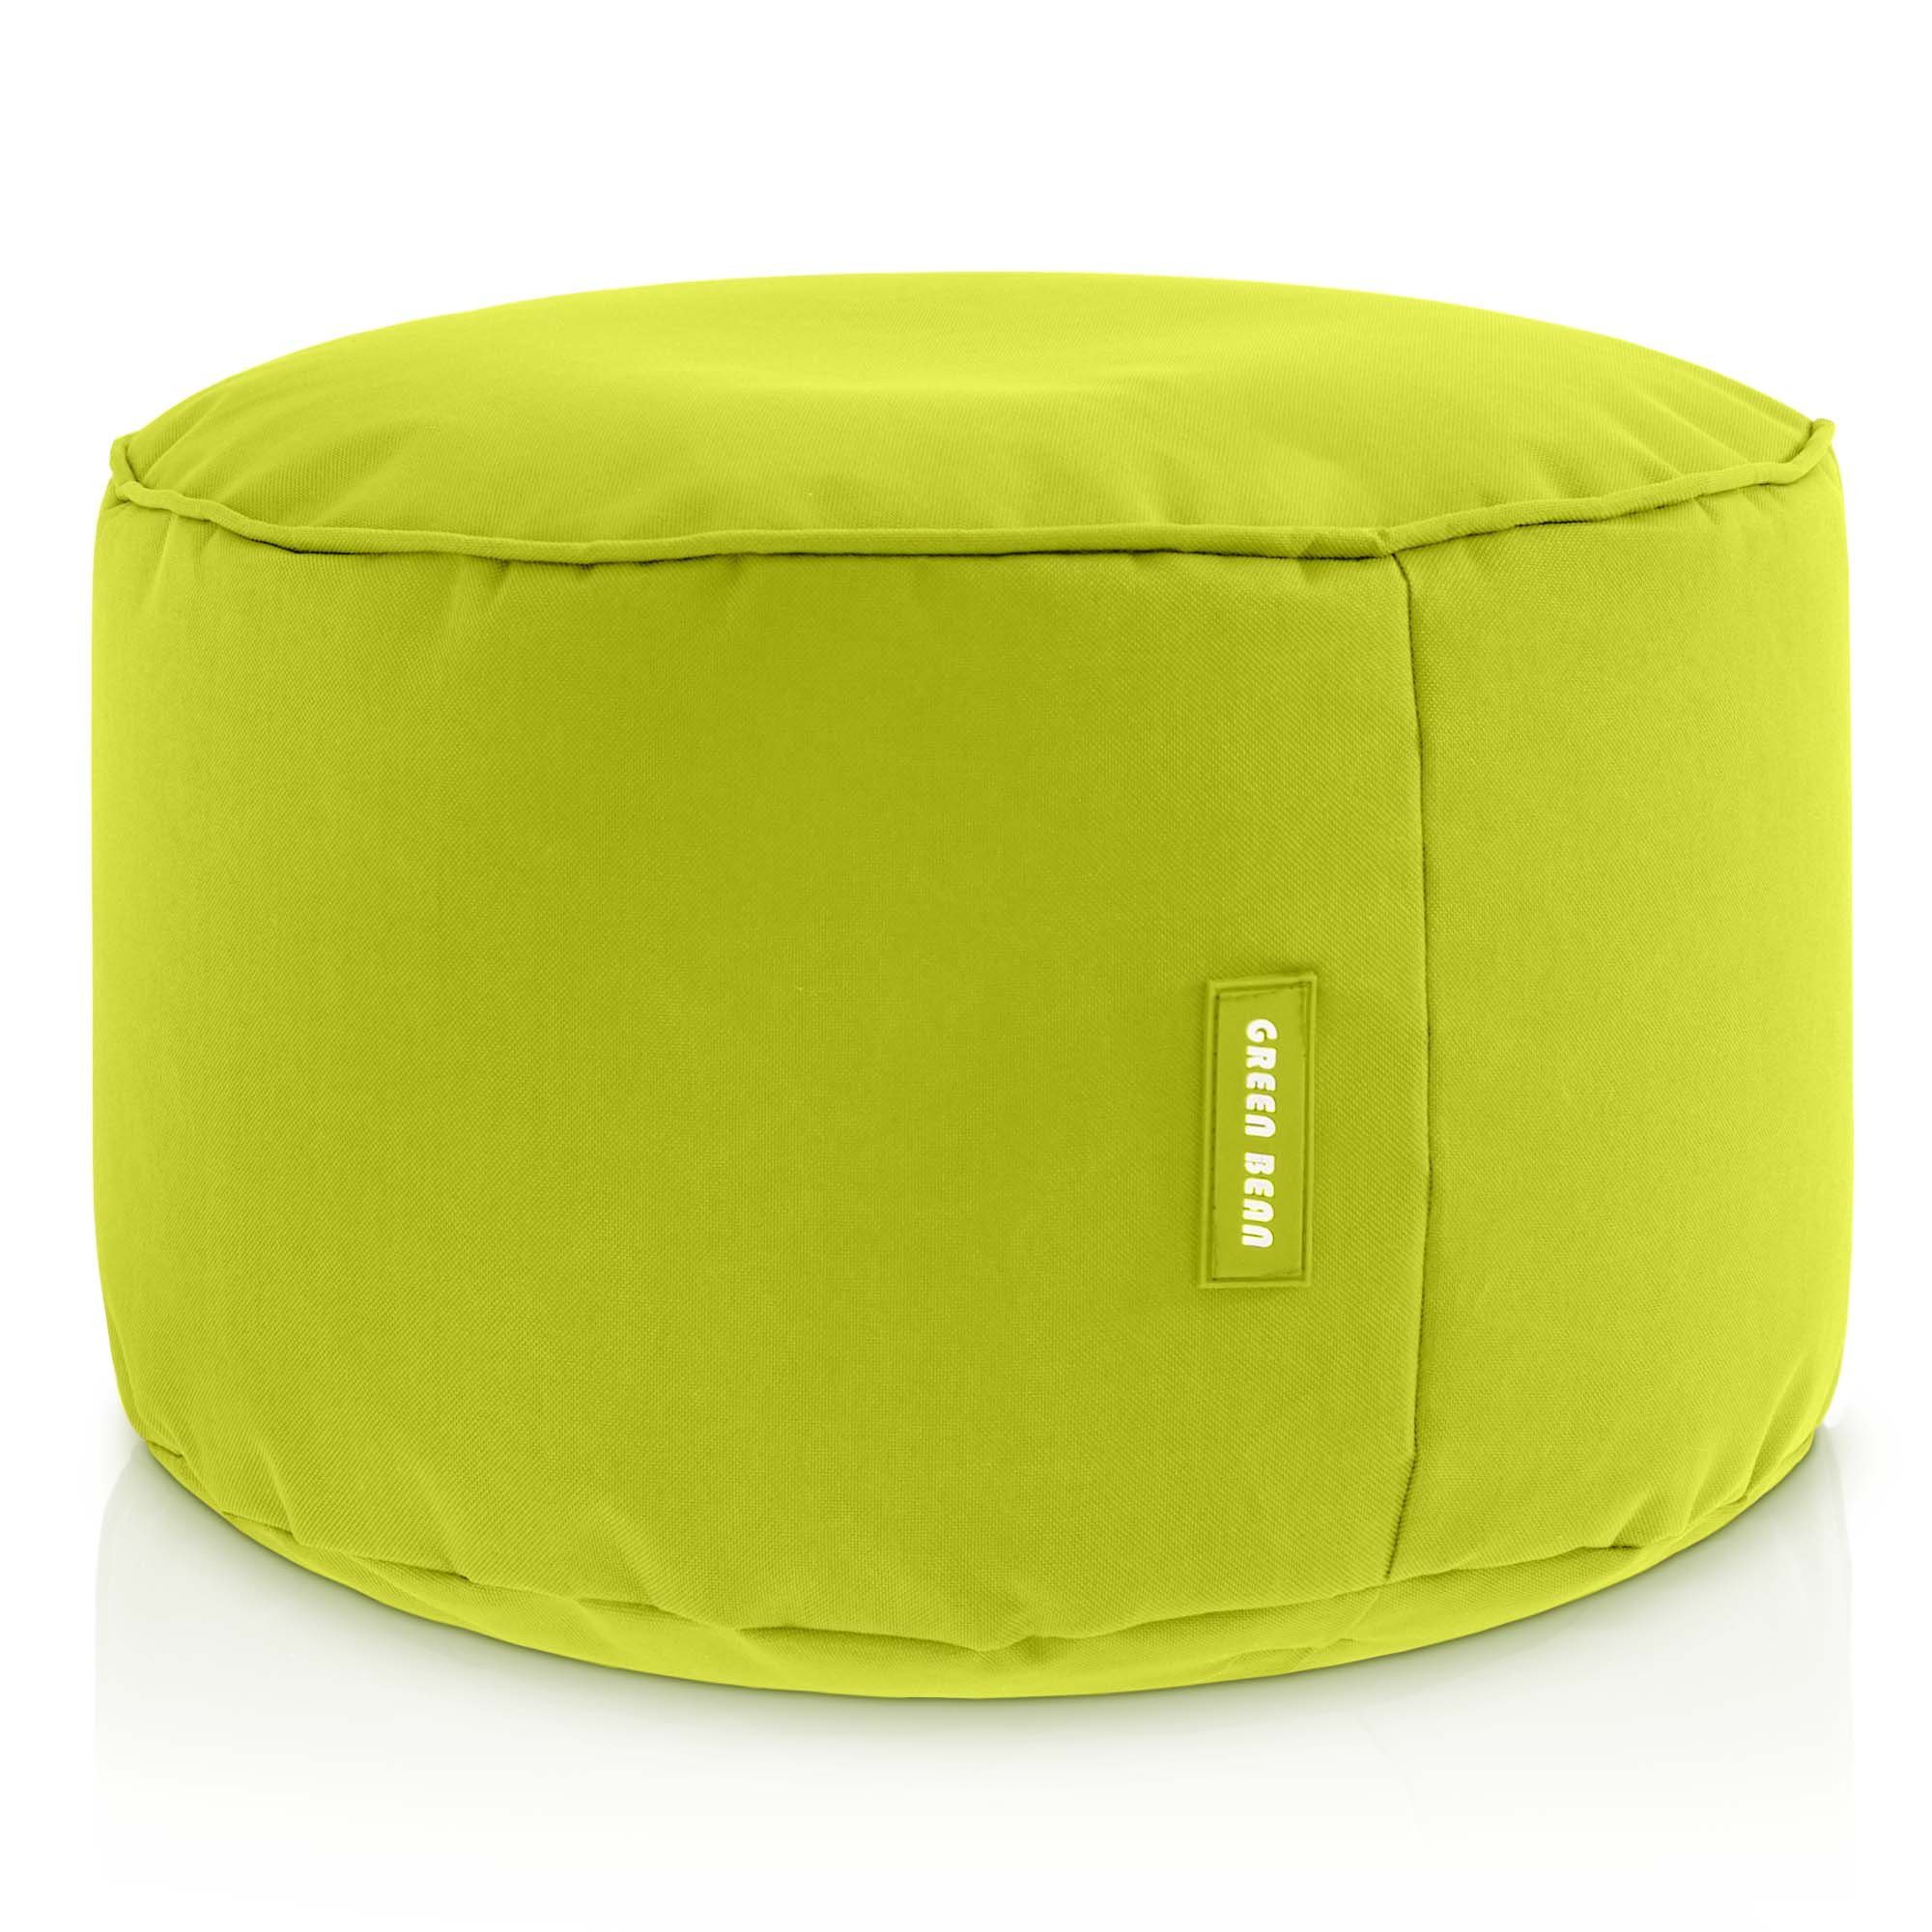 Green Bean Pouf Stay (Sitzsack-Hocker 25x45cm mit EPS-Perlen Füllung -, Fußhocker Fußkissen Sitz-Pouf für Sitzsäcke), Bodenkissen für Kinder und Erwachsene - Sitzkissen Sitzhocker Hellgrün